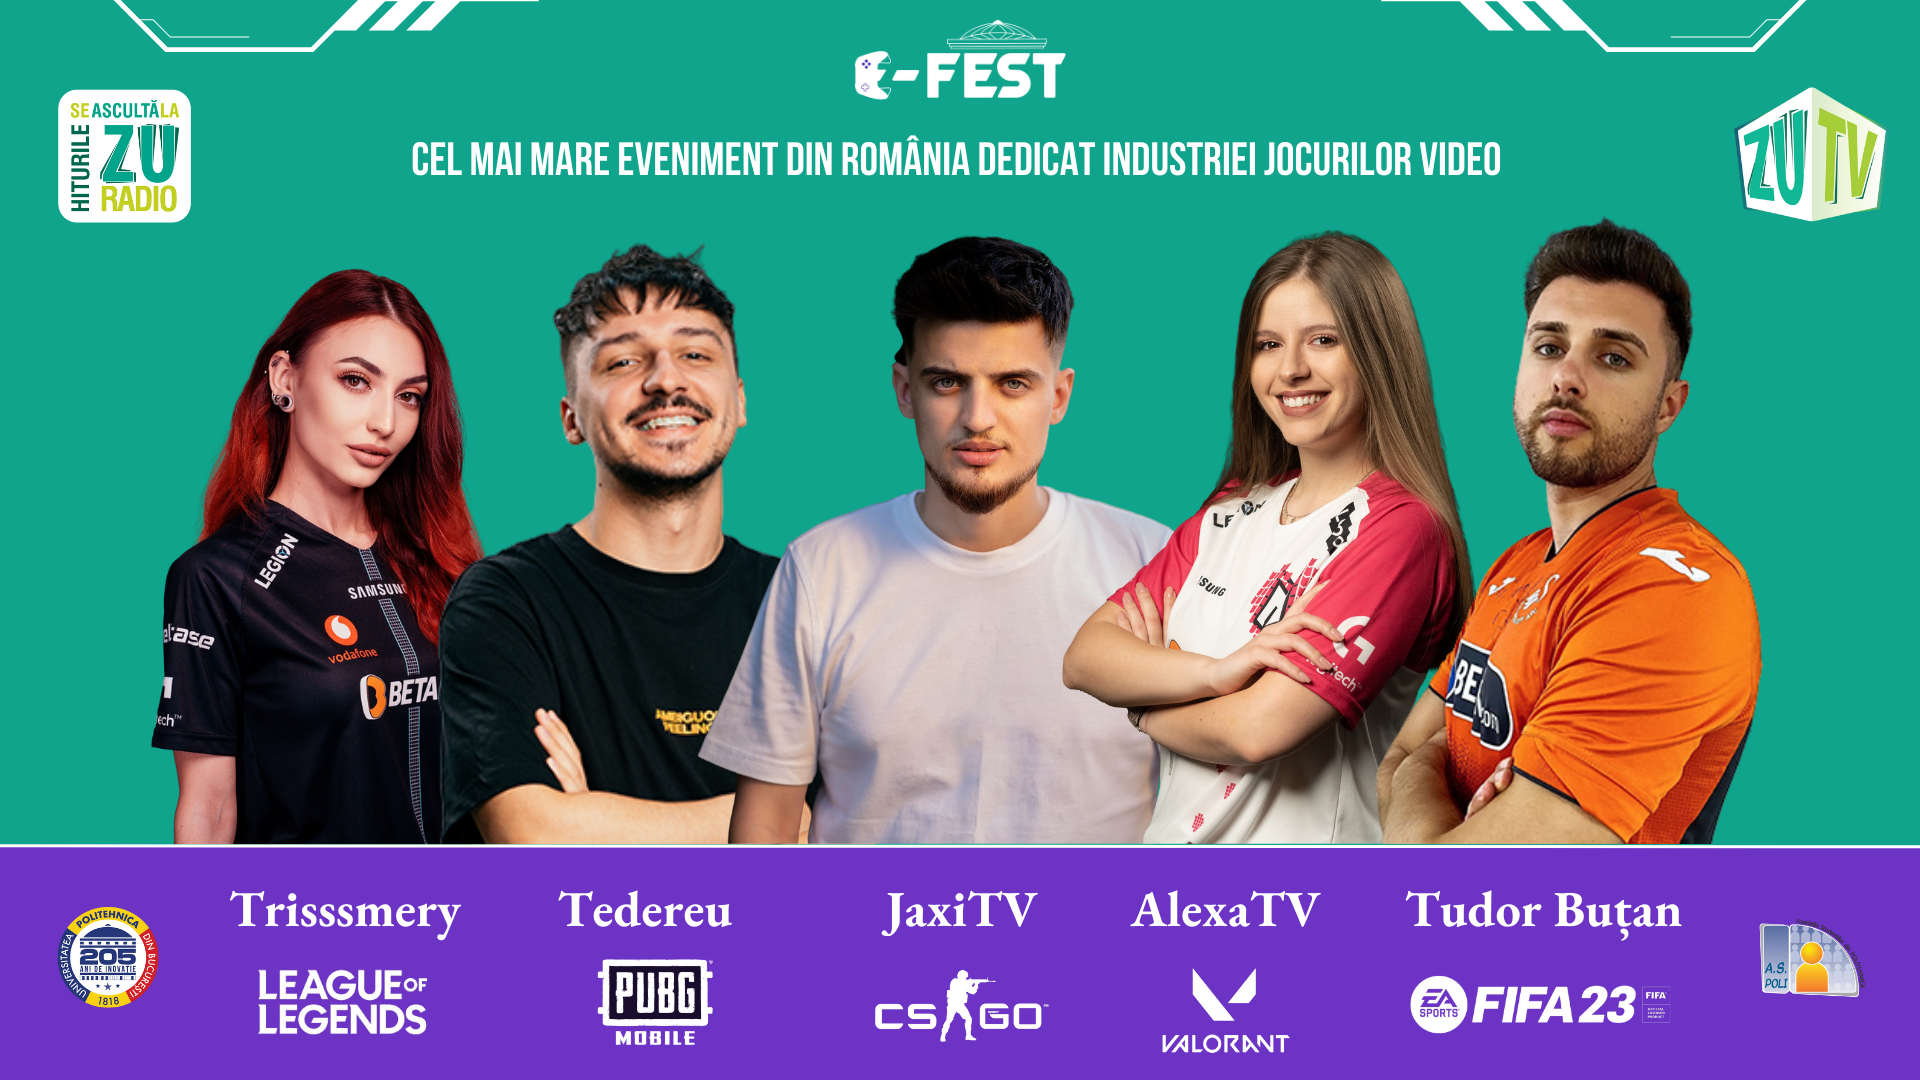 Universitatea POLITEHNICA din București te invită la POLI E-Fest, cea mai mare competiție de jocuri video din țară